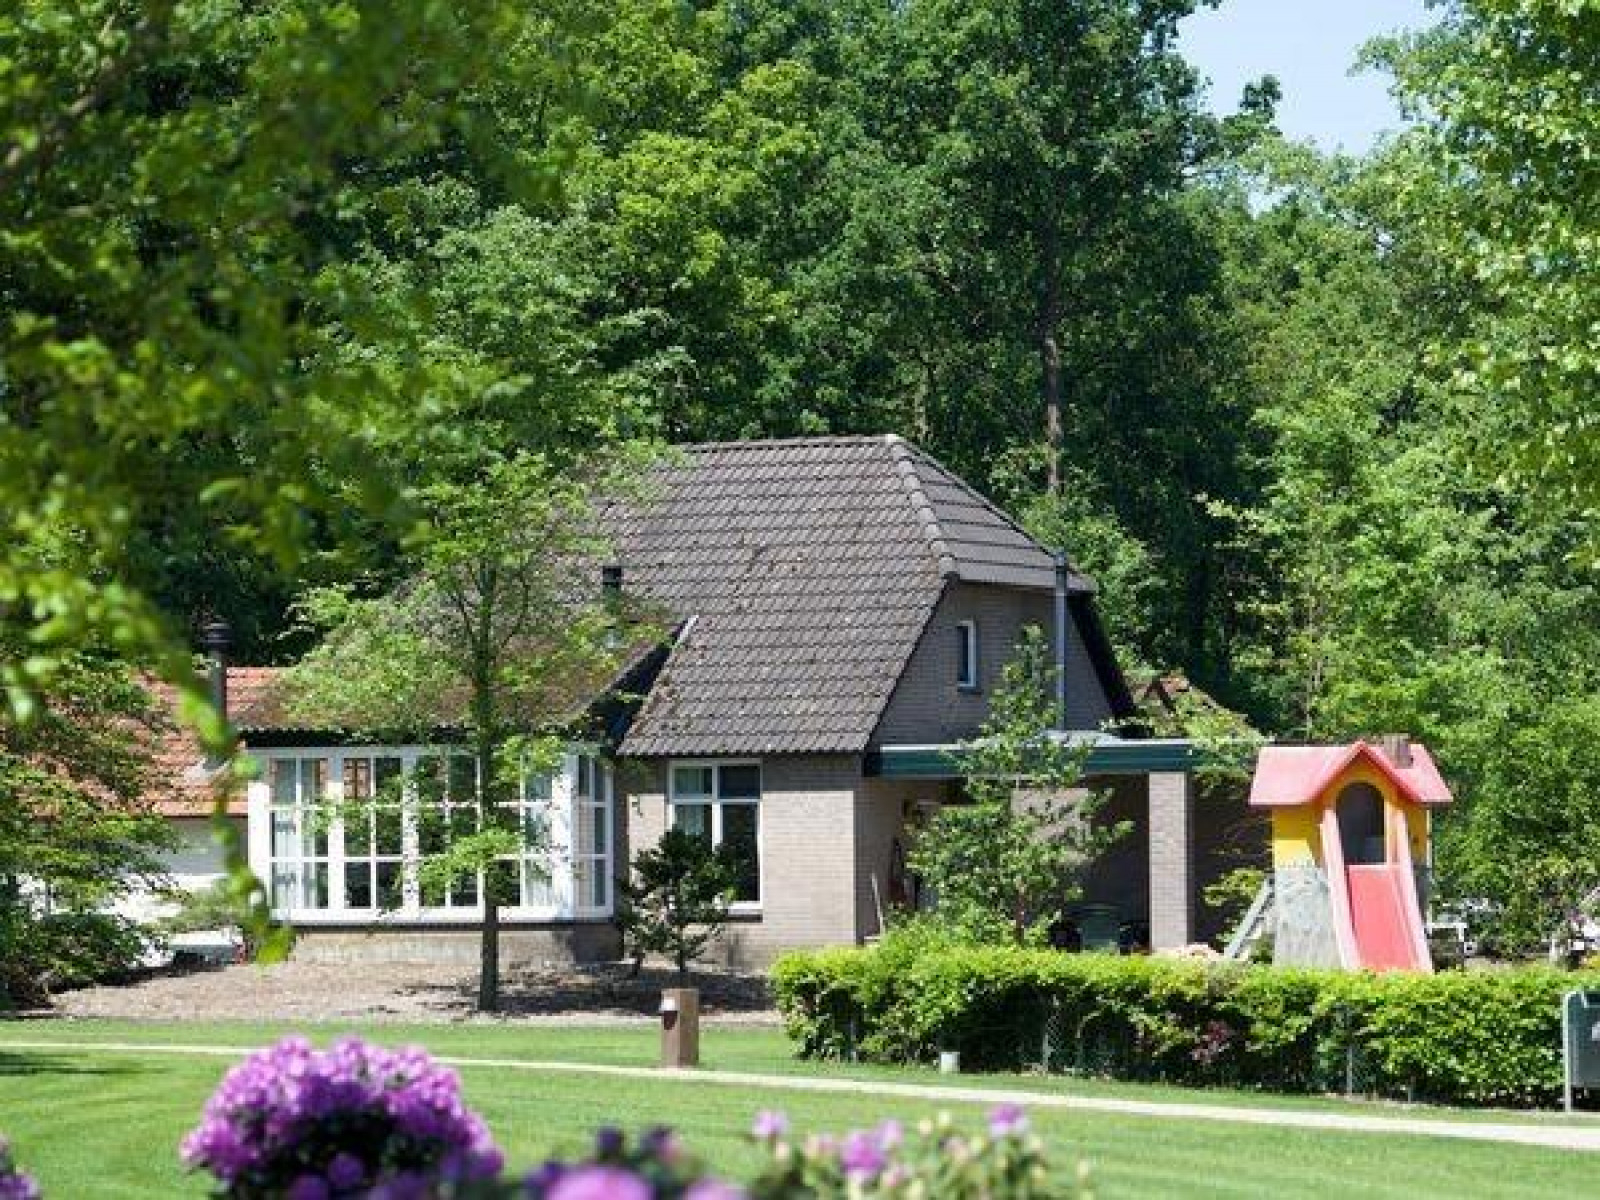 Prachtig 6 persoons vakantiehuis in Noord Brabant - Nederland - Europa - Uden